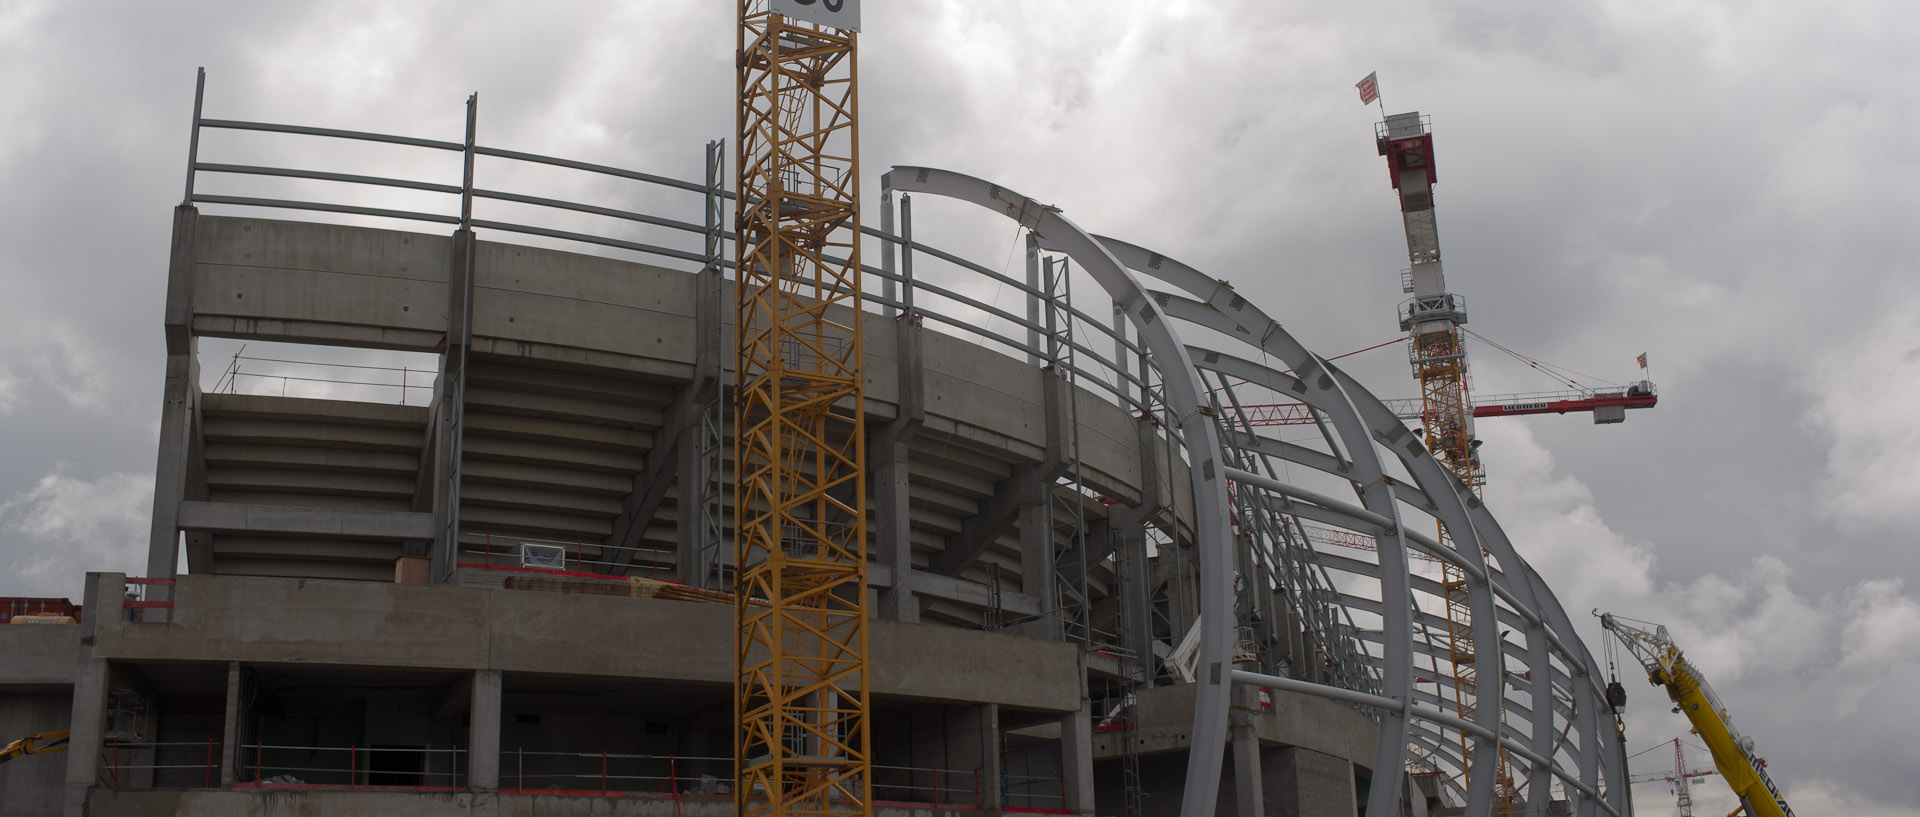 La construction du grand stade de Lille métropole, à Villeneuve d'Ascq.